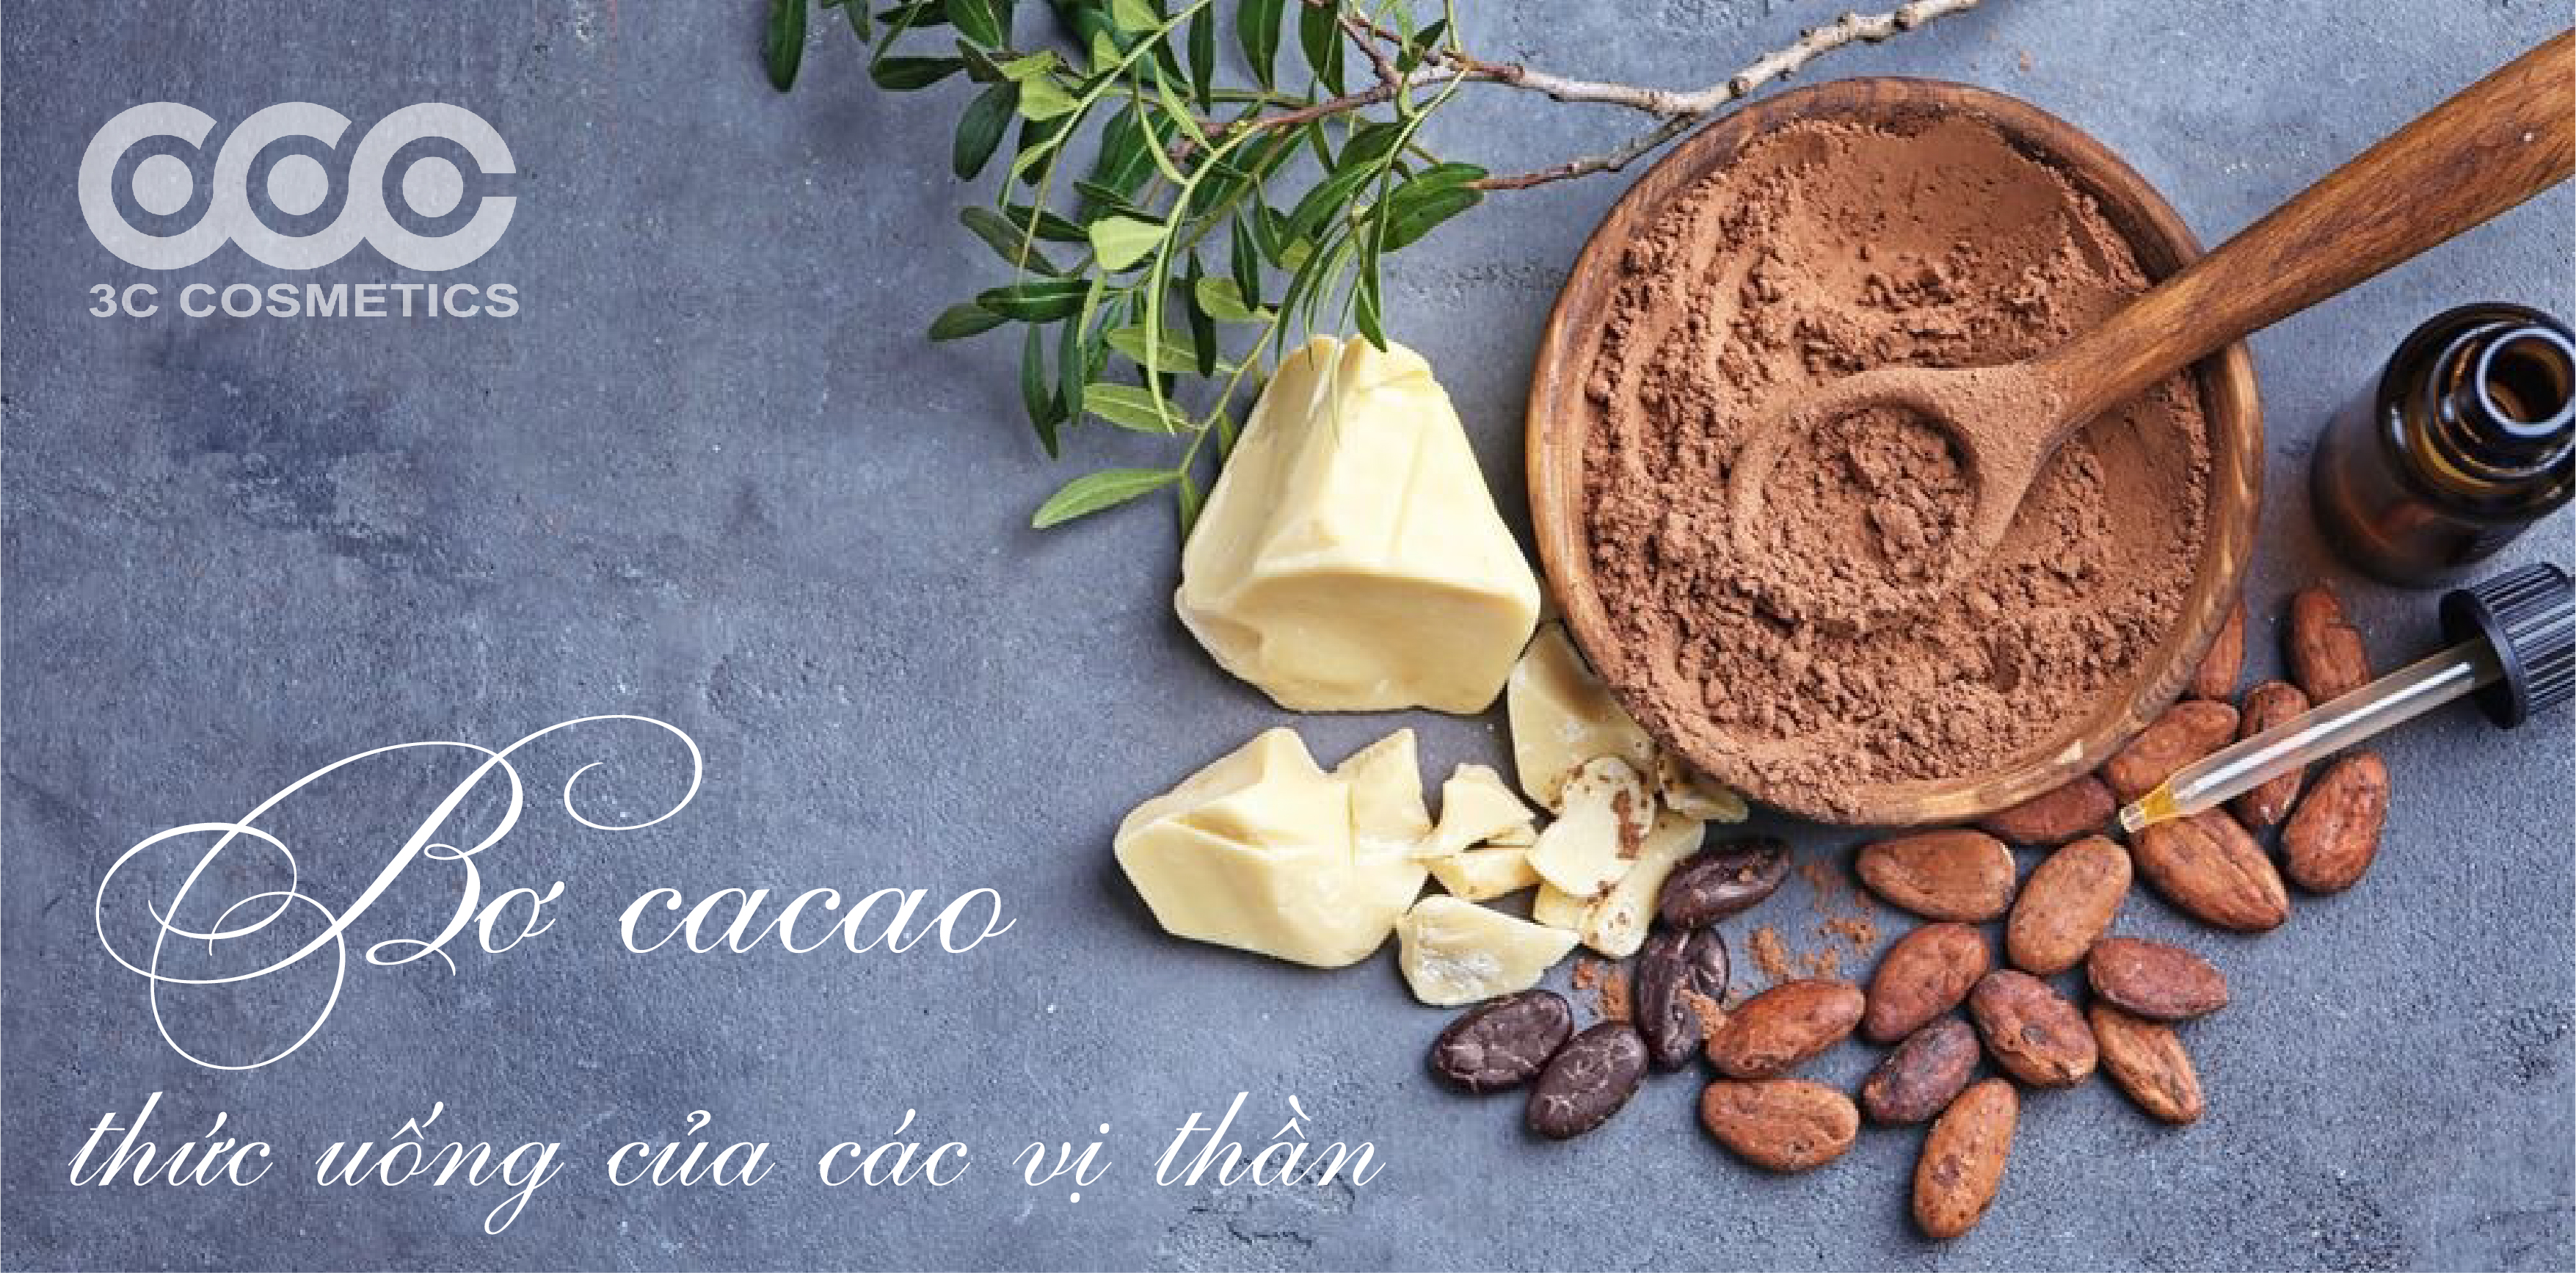 Bơ cacao và những lợi ích tuyệt vời với làn da